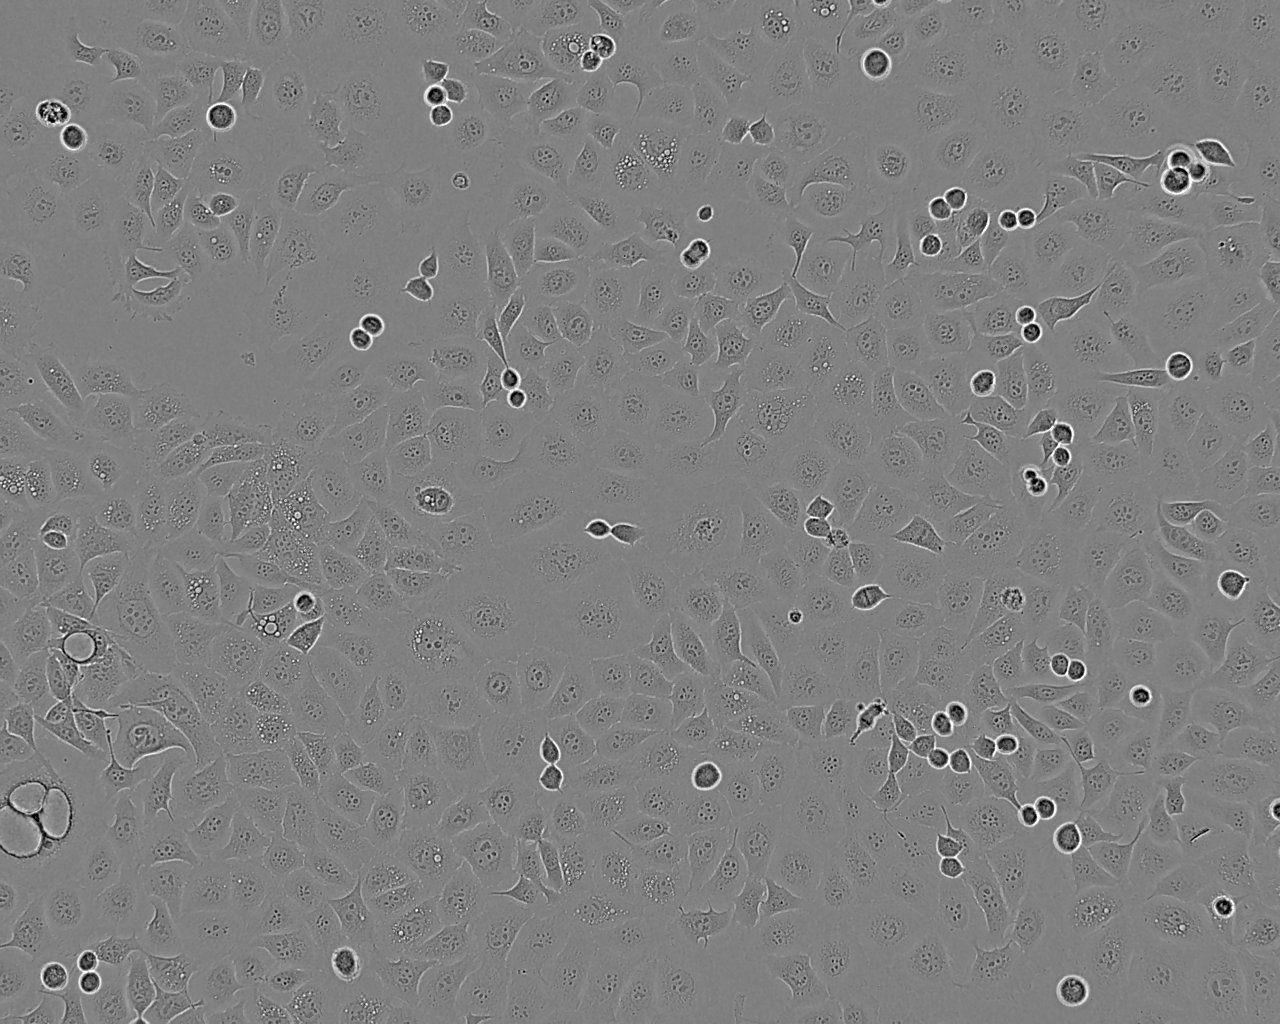 KP-N-RT-BM-1 Cell:人神经母细胞瘤细胞系,KP-N-RT-BM-1 Cell